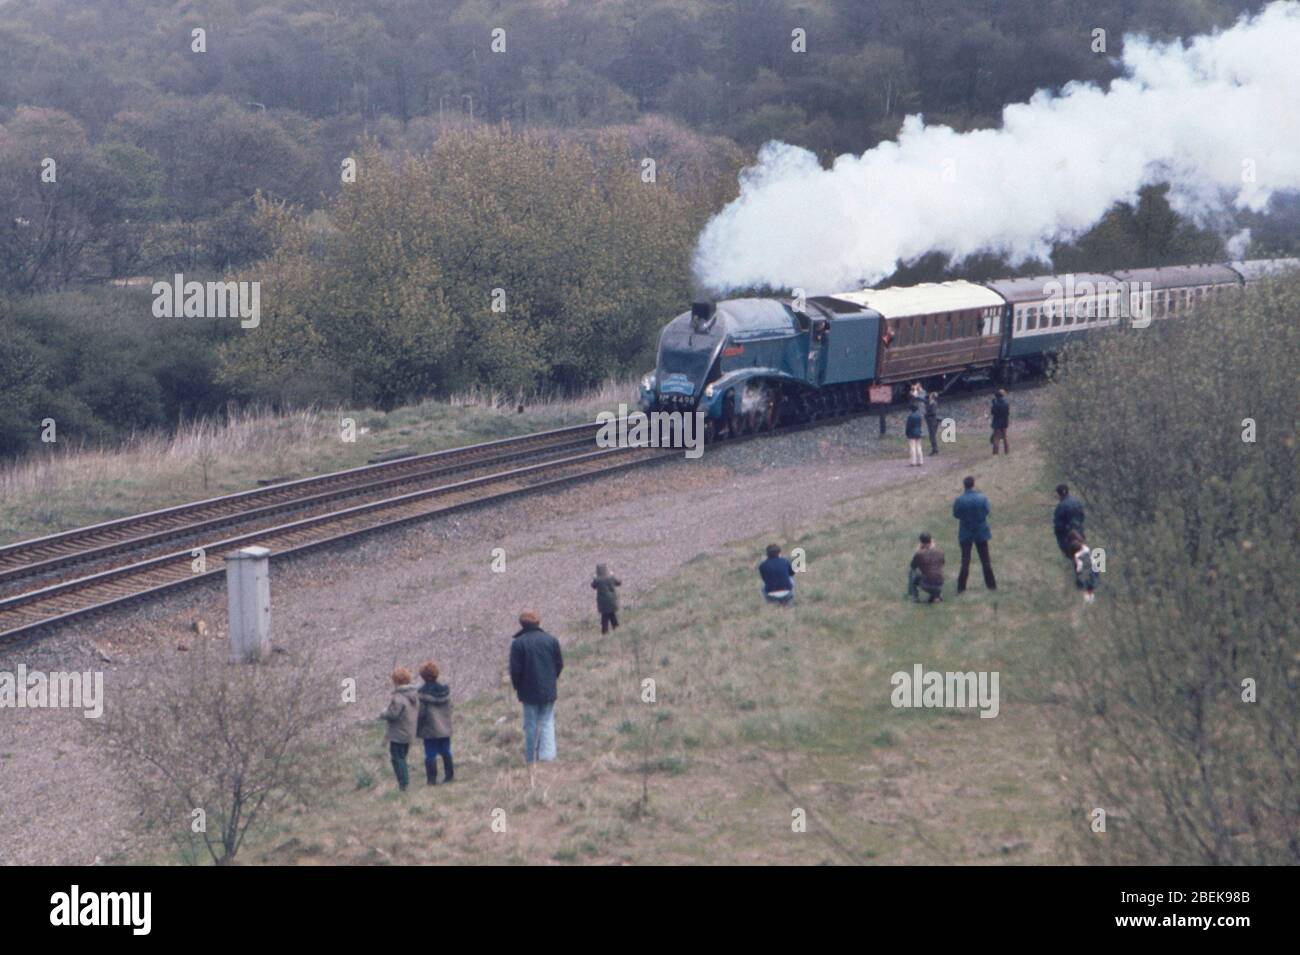 1976, les amateurs de chemins de fer regardaient les trains à vapeur de la ligne principale, Angleterre du Nord, Royaume-Uni Banque D'Images